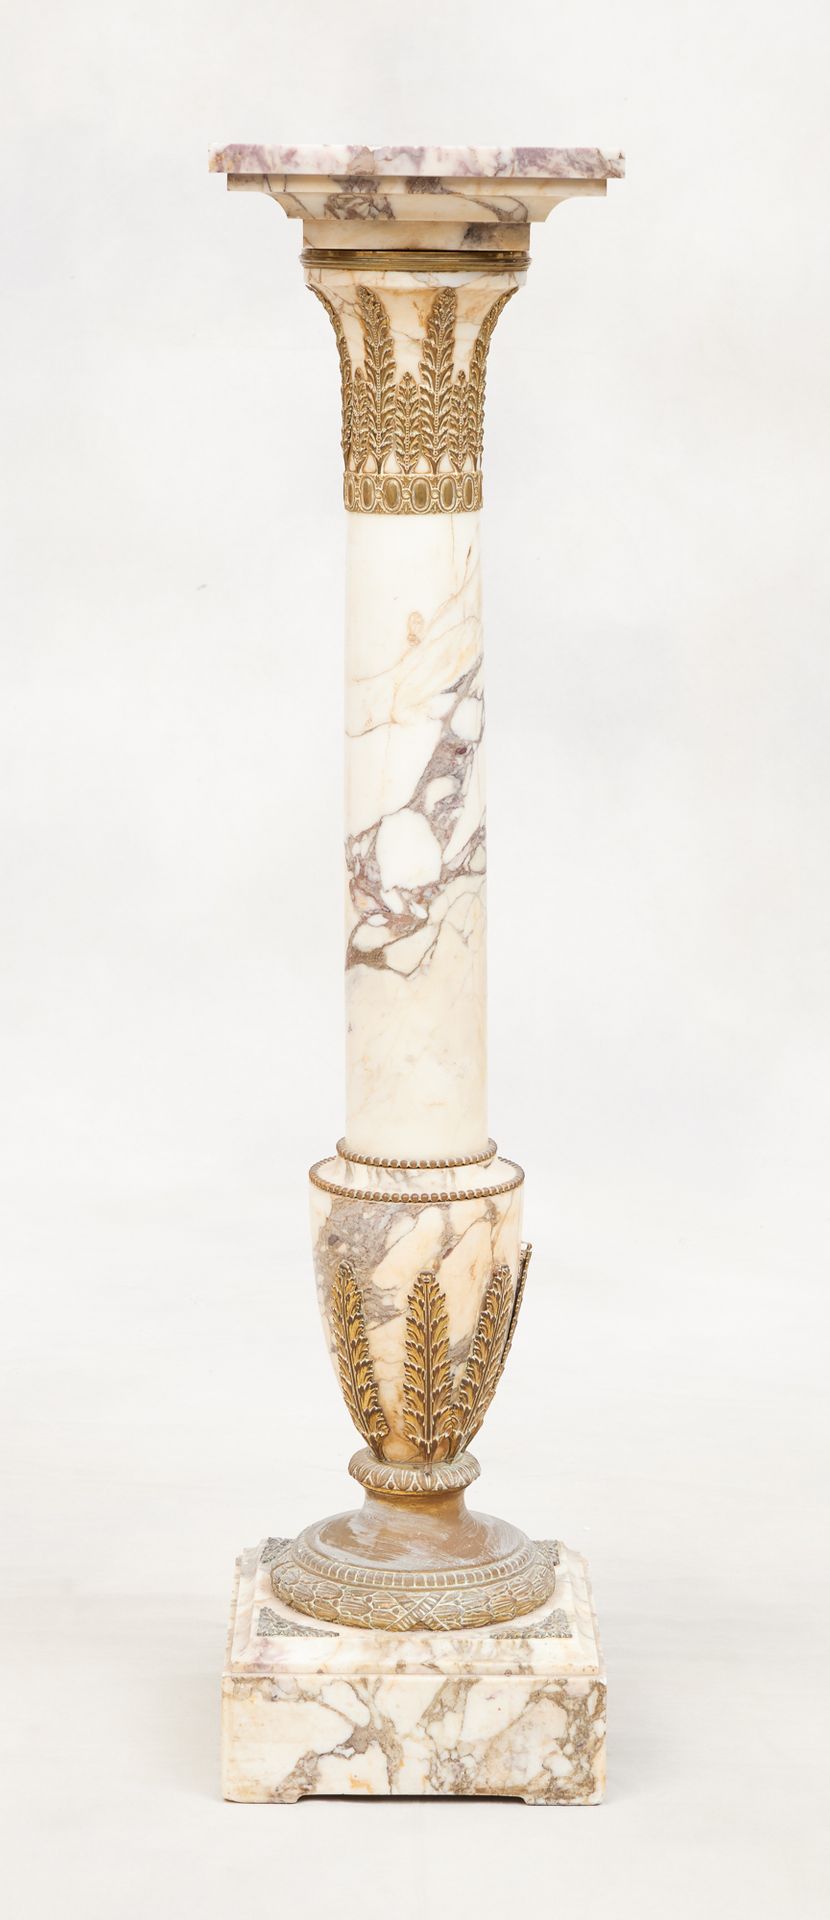 Circa 1900. Meuble: Colonne en marbre, rehauts de bronzes dorés.
Dim.: H.: 112 c&hellip;